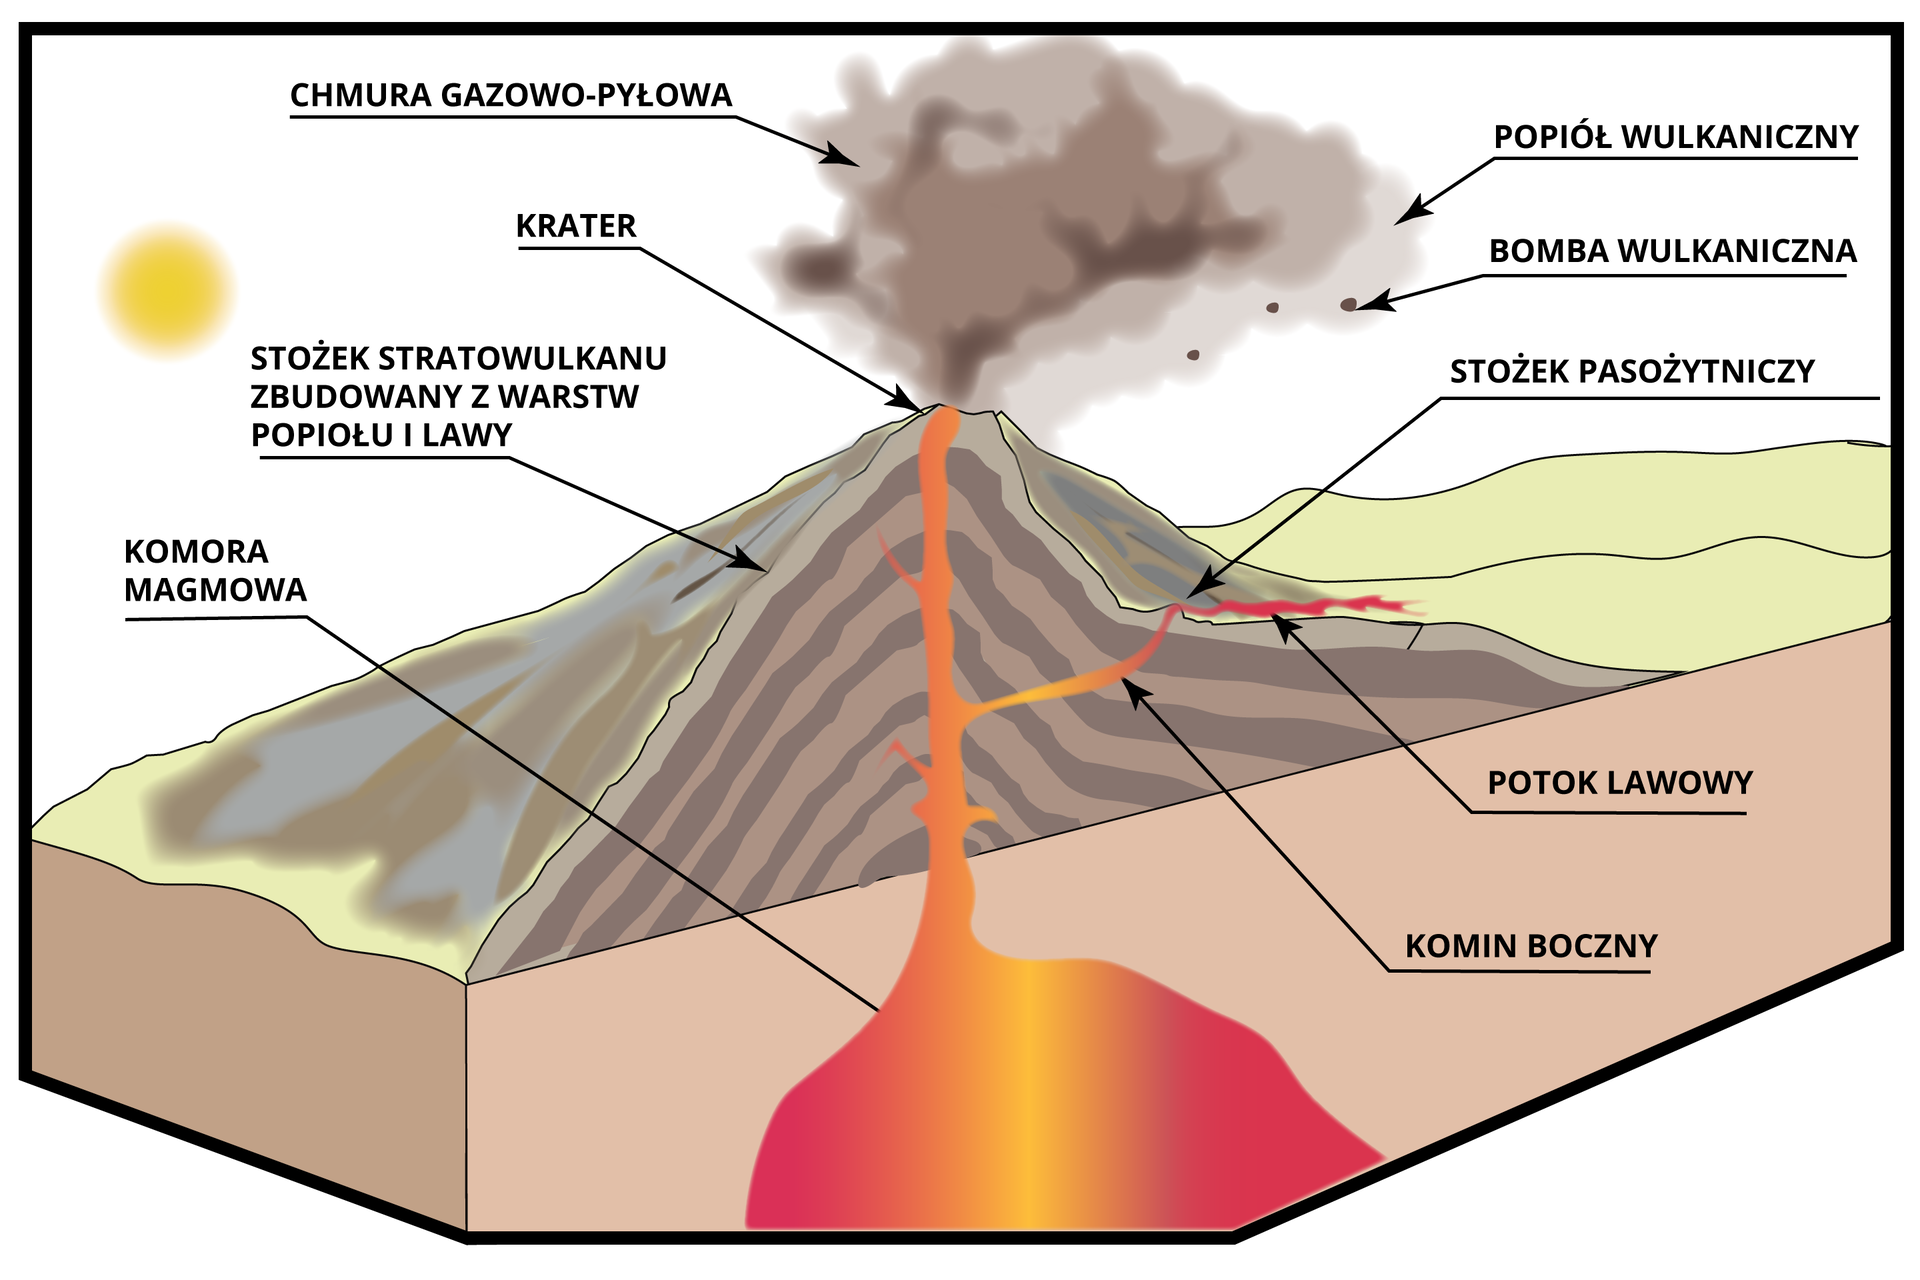 Schemat przedstawia budowę wulkanu stożkowego. Opis od dołu: po powierzchnią Ziemi znajduje się komora magmowa. Prowadzi od niej w górę przechodzący przez środek wulkanu komin wulkaniczny. Od komina odchodzi odgałęzienie - to komin boczny. Z komina bocznego wydobywa się potok lawy. Tam tworzy się stożek pasożytniczy. Na szczycie stożka stratowulkanu zbudowanego z warstwy popiołu i lawy znajduje się krater. Nad kraterem tworzy się chmura gazowo-pyłowa. Zaznaczono w niej popiół wulkaniczny i bombę wulkaniczną - kawałki materiału piroklastycznego. 